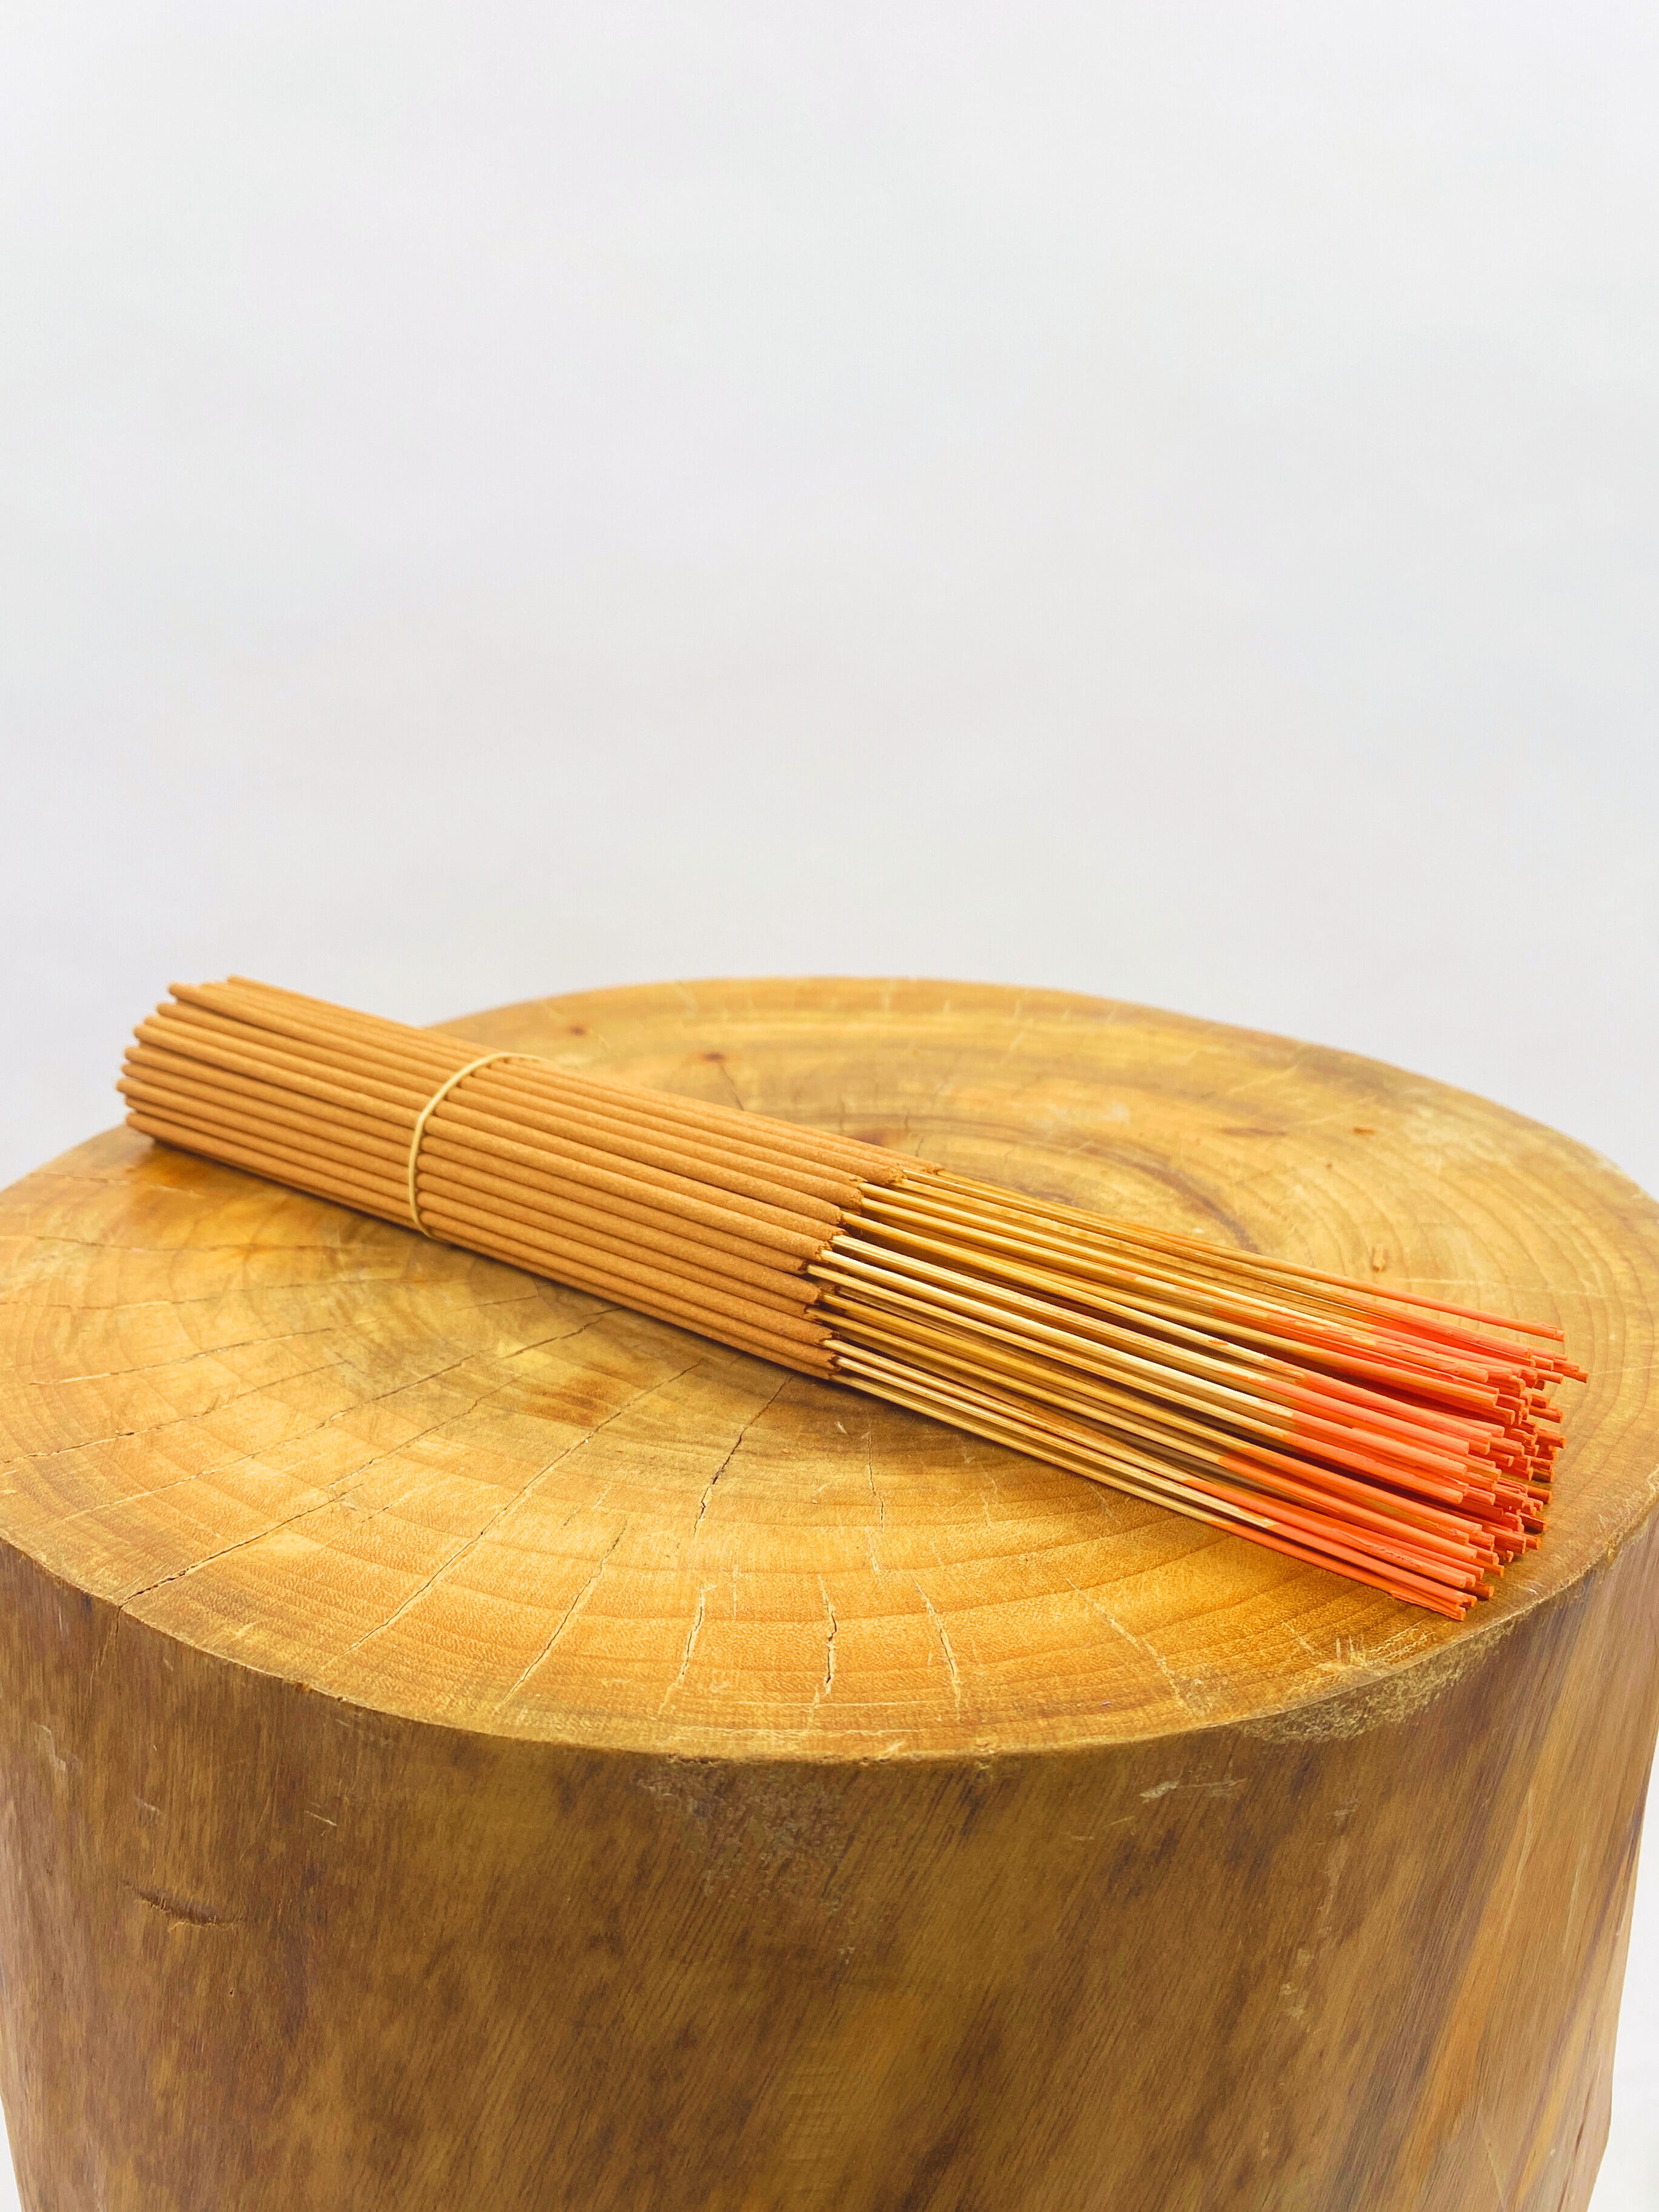 Orange Spice Incense Sticks